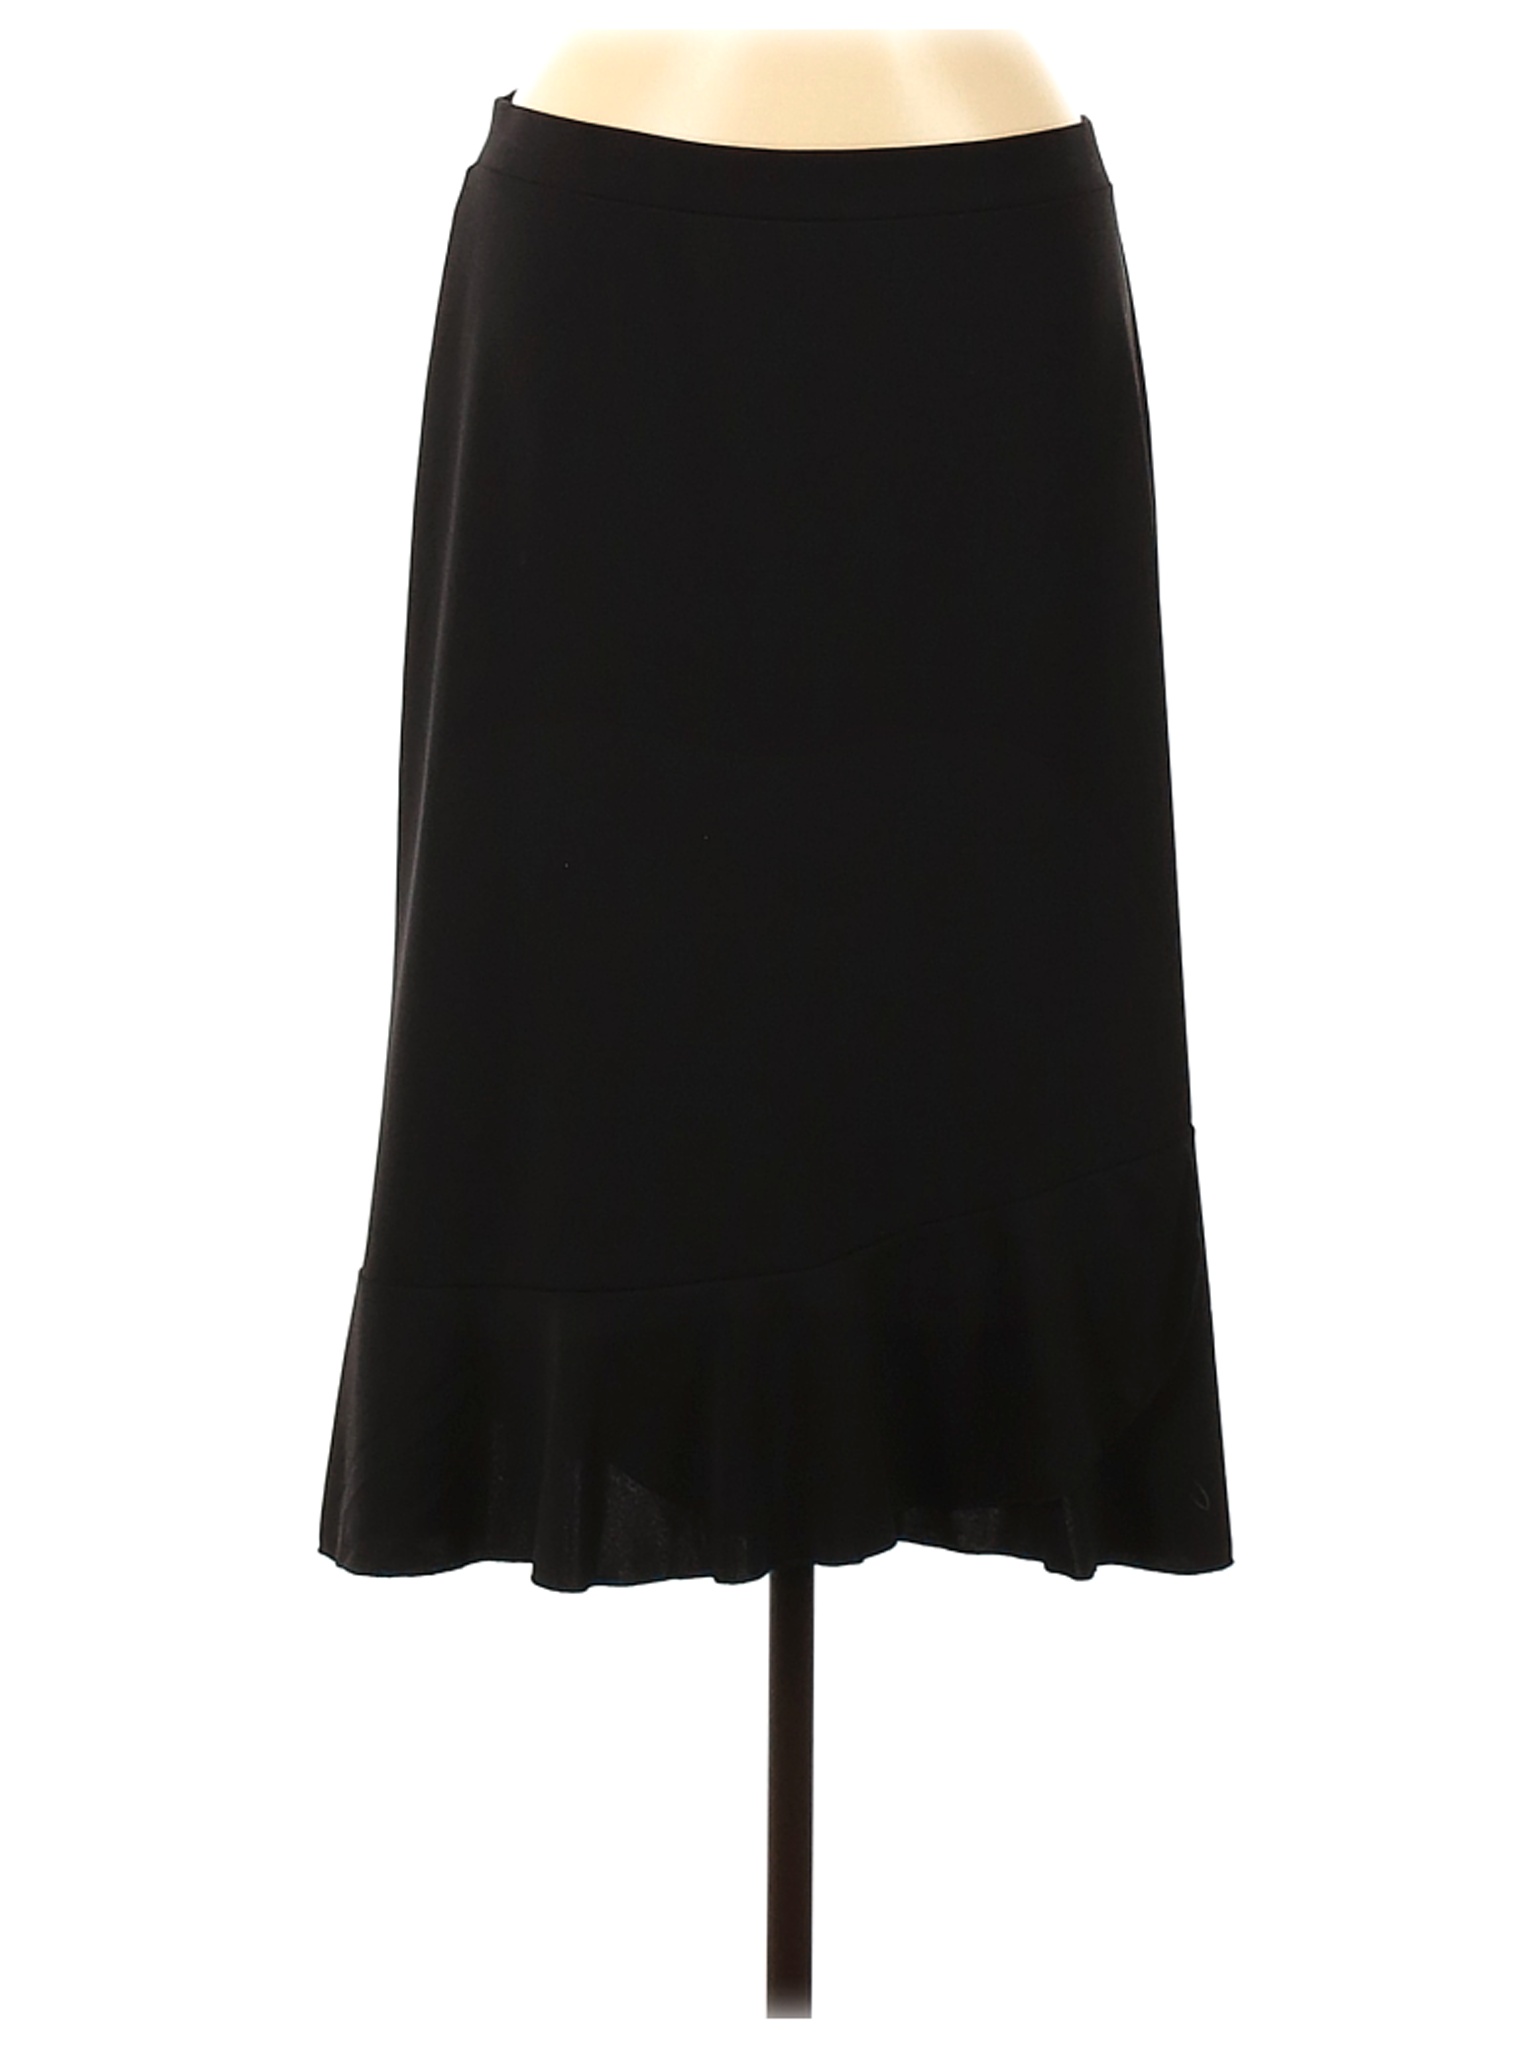 Sigrid Olsen Women Black Casual Skirt M | eBay